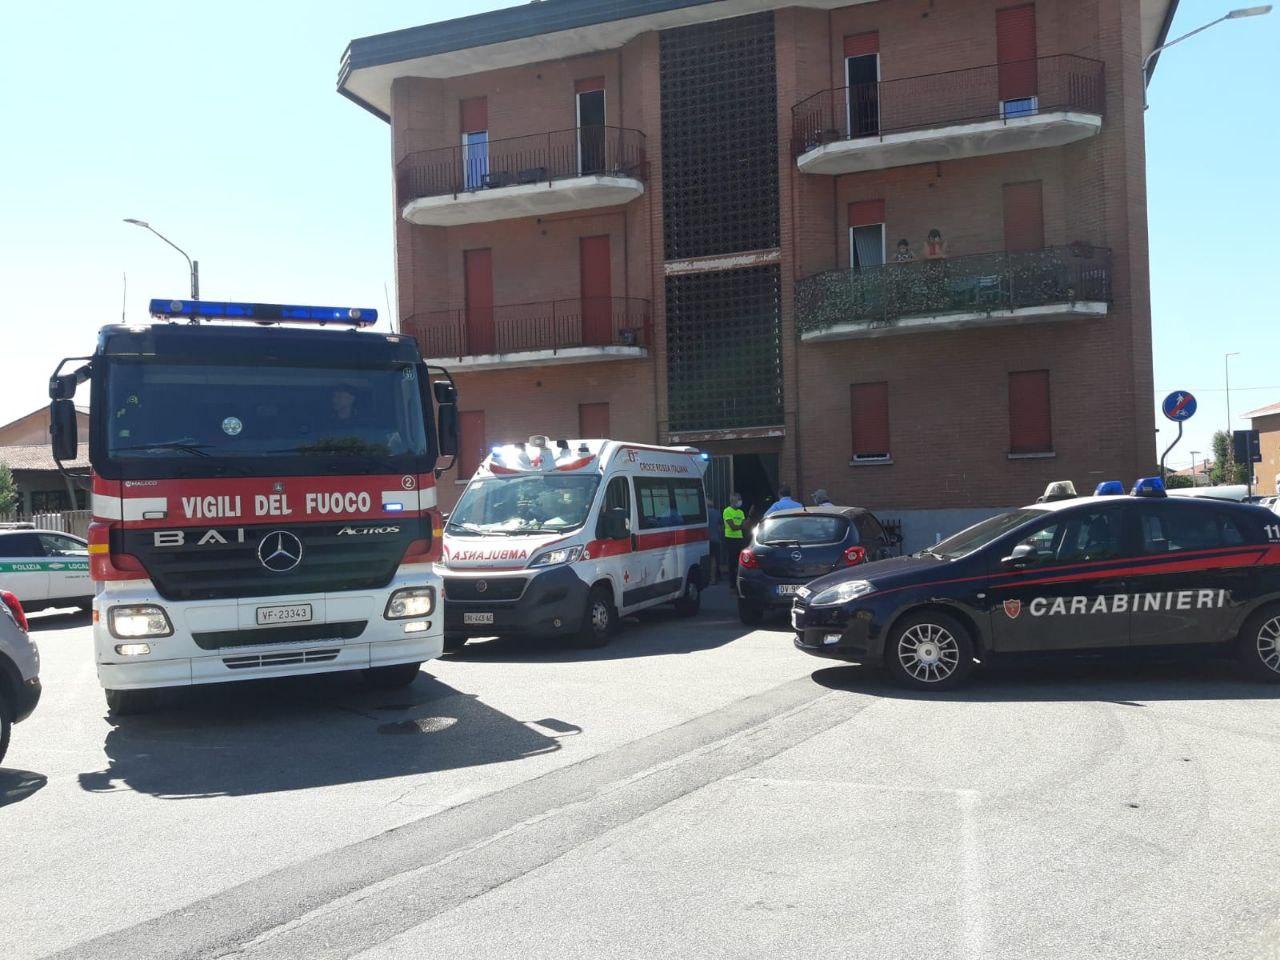 Uboldo, pompieri, vigili e carabinieri mobilitati per un malore… al terzo piano